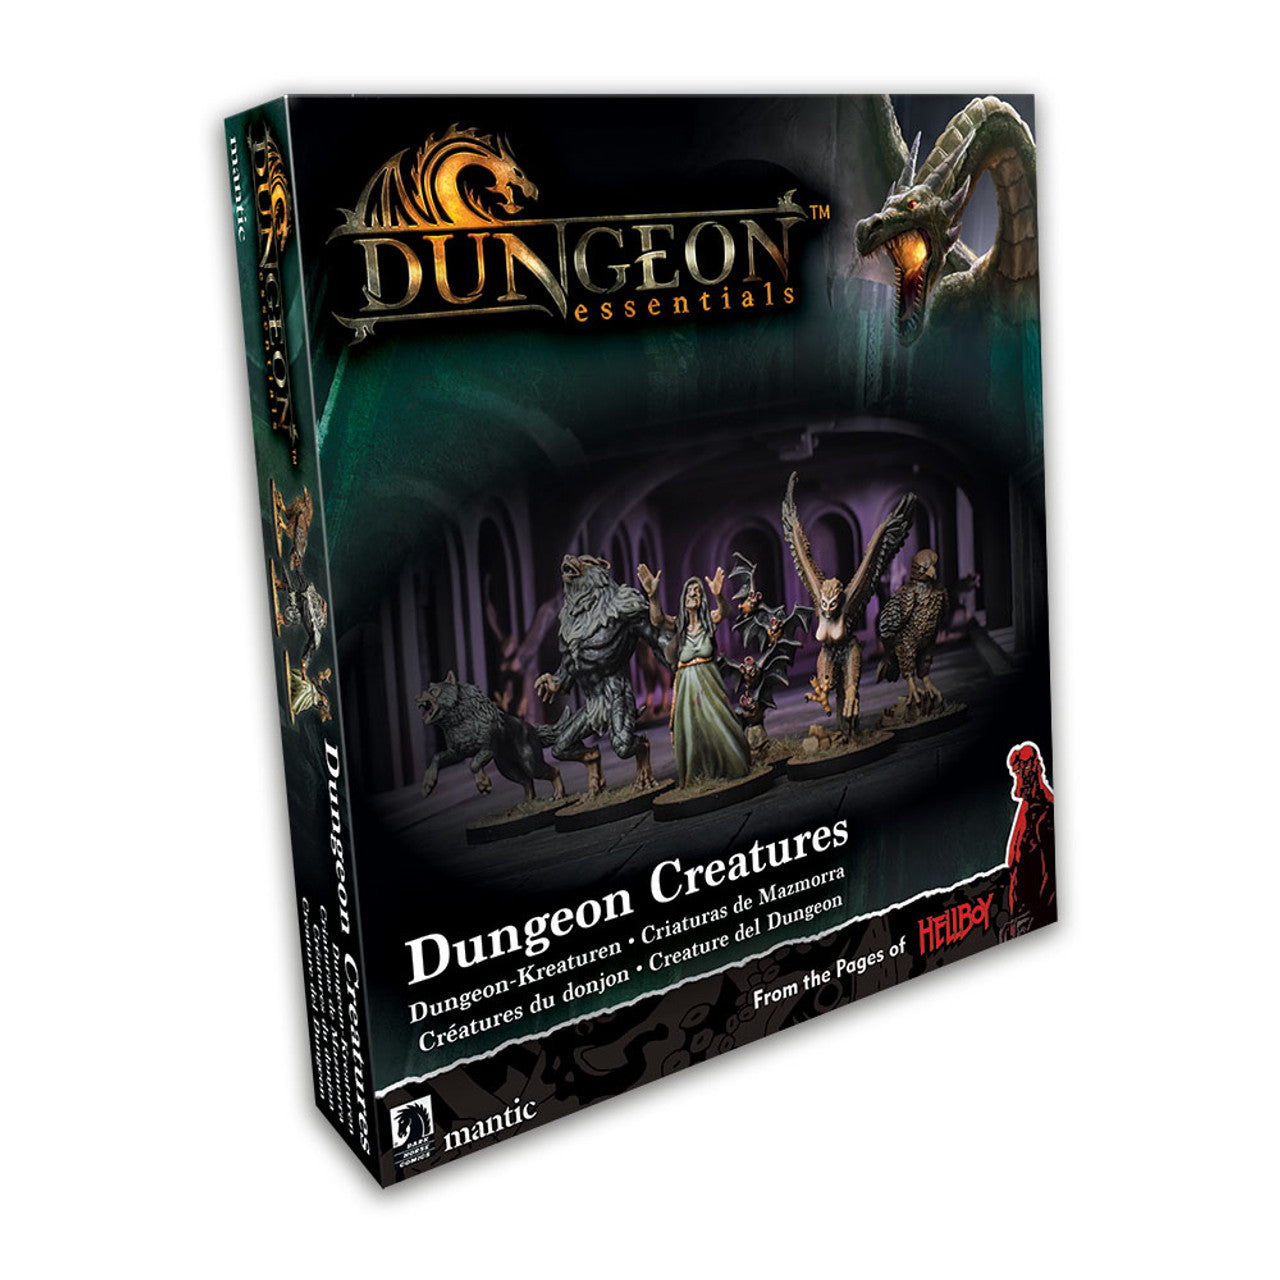 Dungeon Adventures: Dungeon Creatures